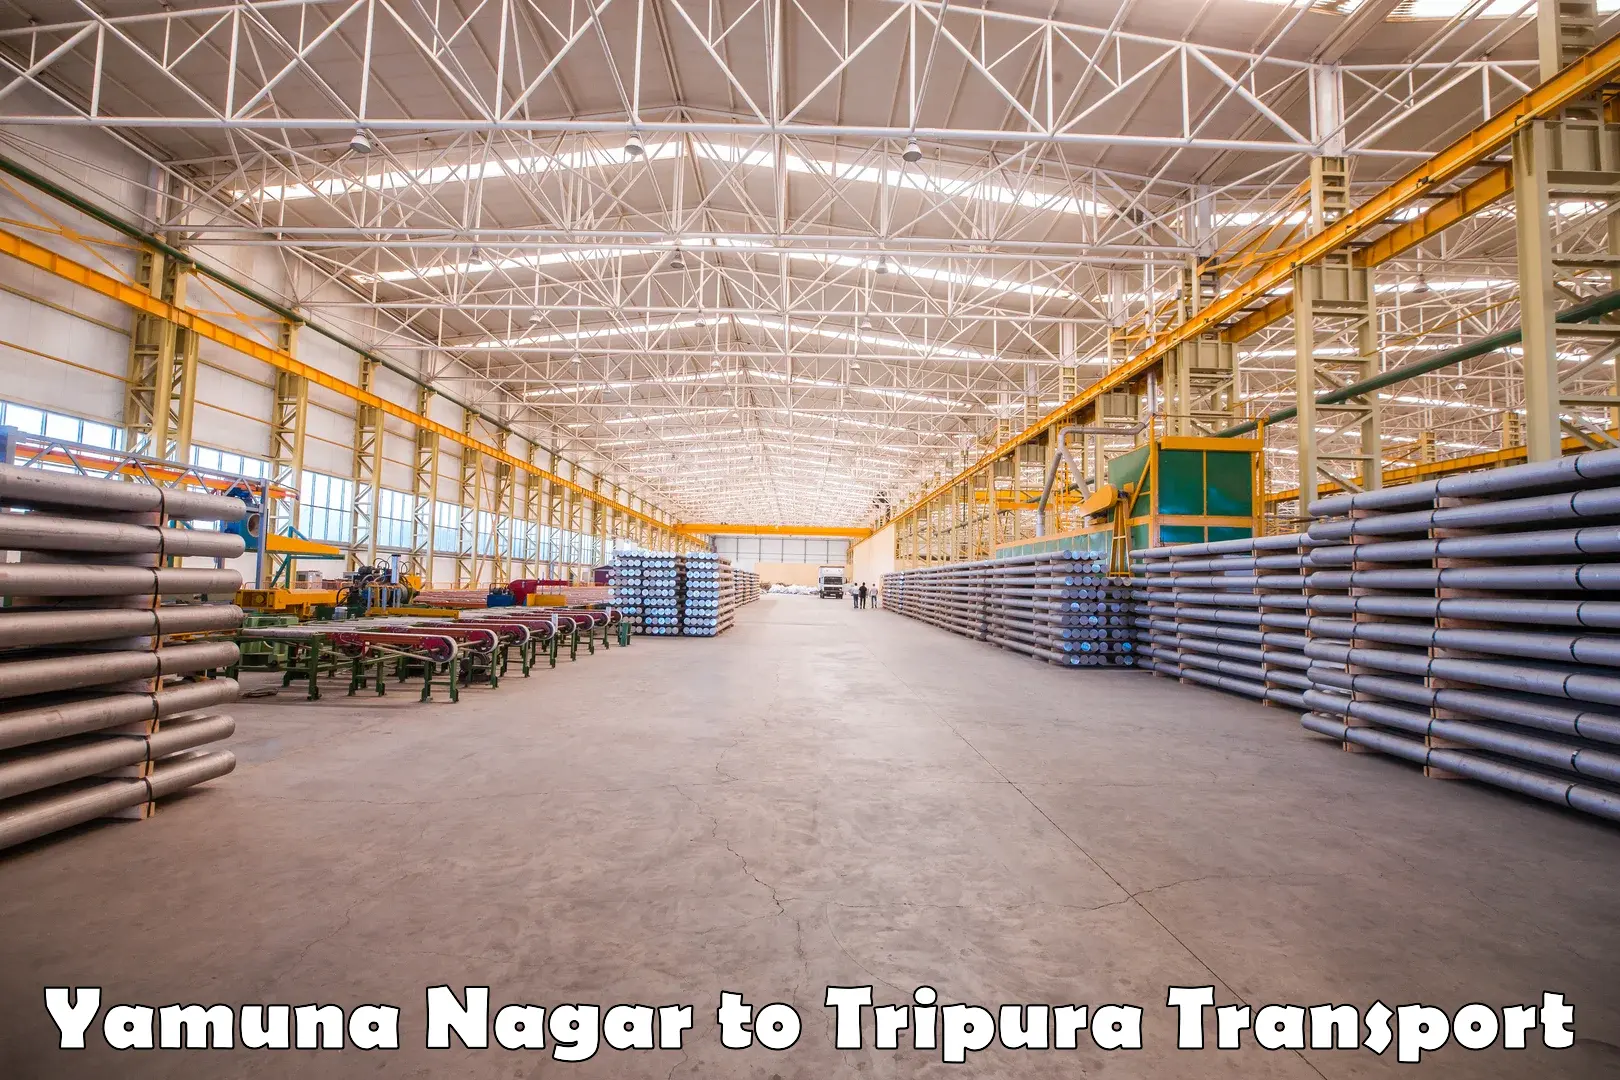 Furniture transport service Yamuna Nagar to NIT Agartala